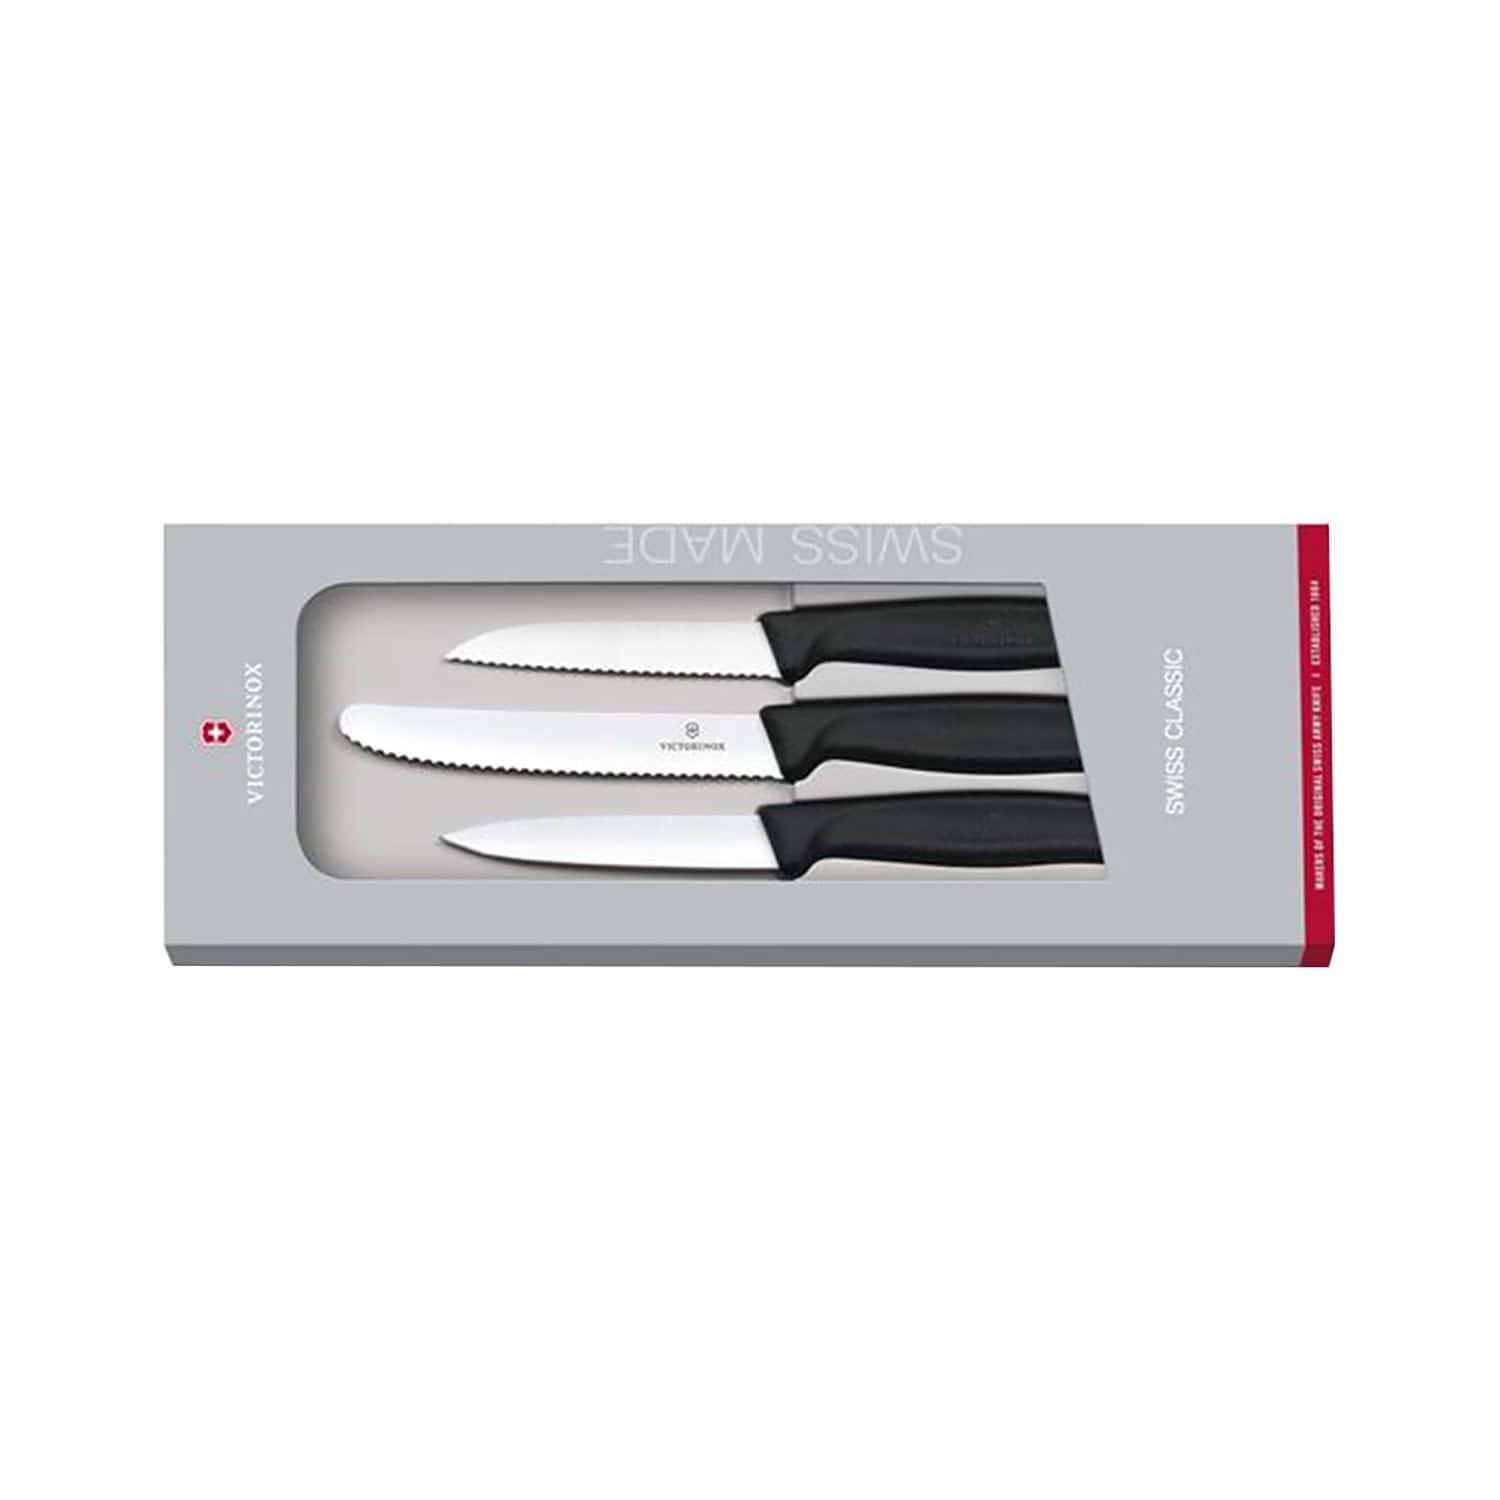 Victorinox السويسرية الكلاسيكية 3 قطعة Paring سكين مجموعة - أسود - 6.7113.3G - Jashanmal الرئيسية